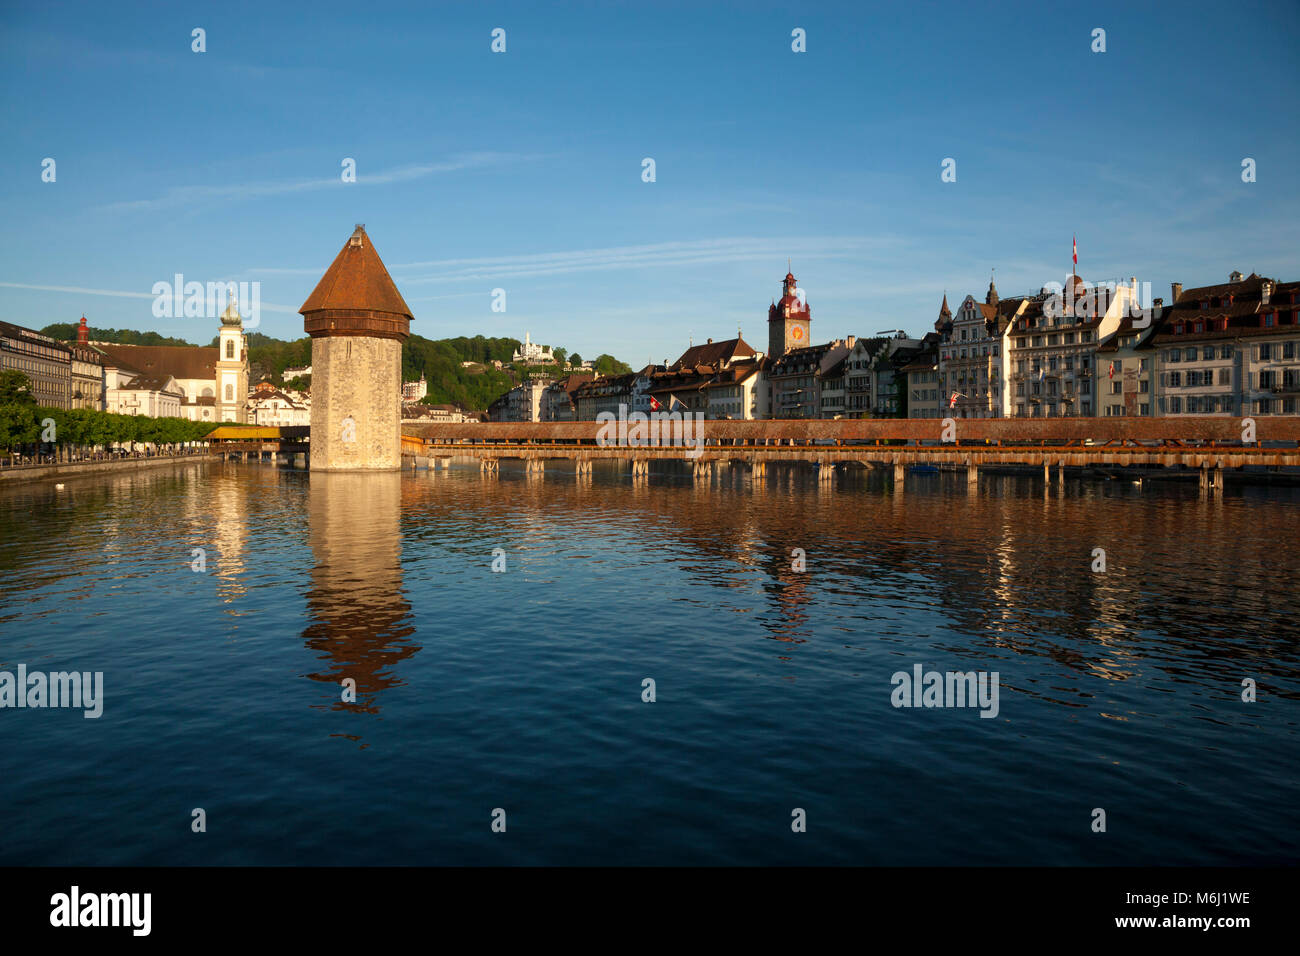 Belle Lumière sur le pont couvert en bois médiévale reflétée dans le lac, le centre-ville de Lucerne Suisse Hôtel Gutsch, tour de l'horloge, masque, boutiques, ciel bleu Banque D'Images